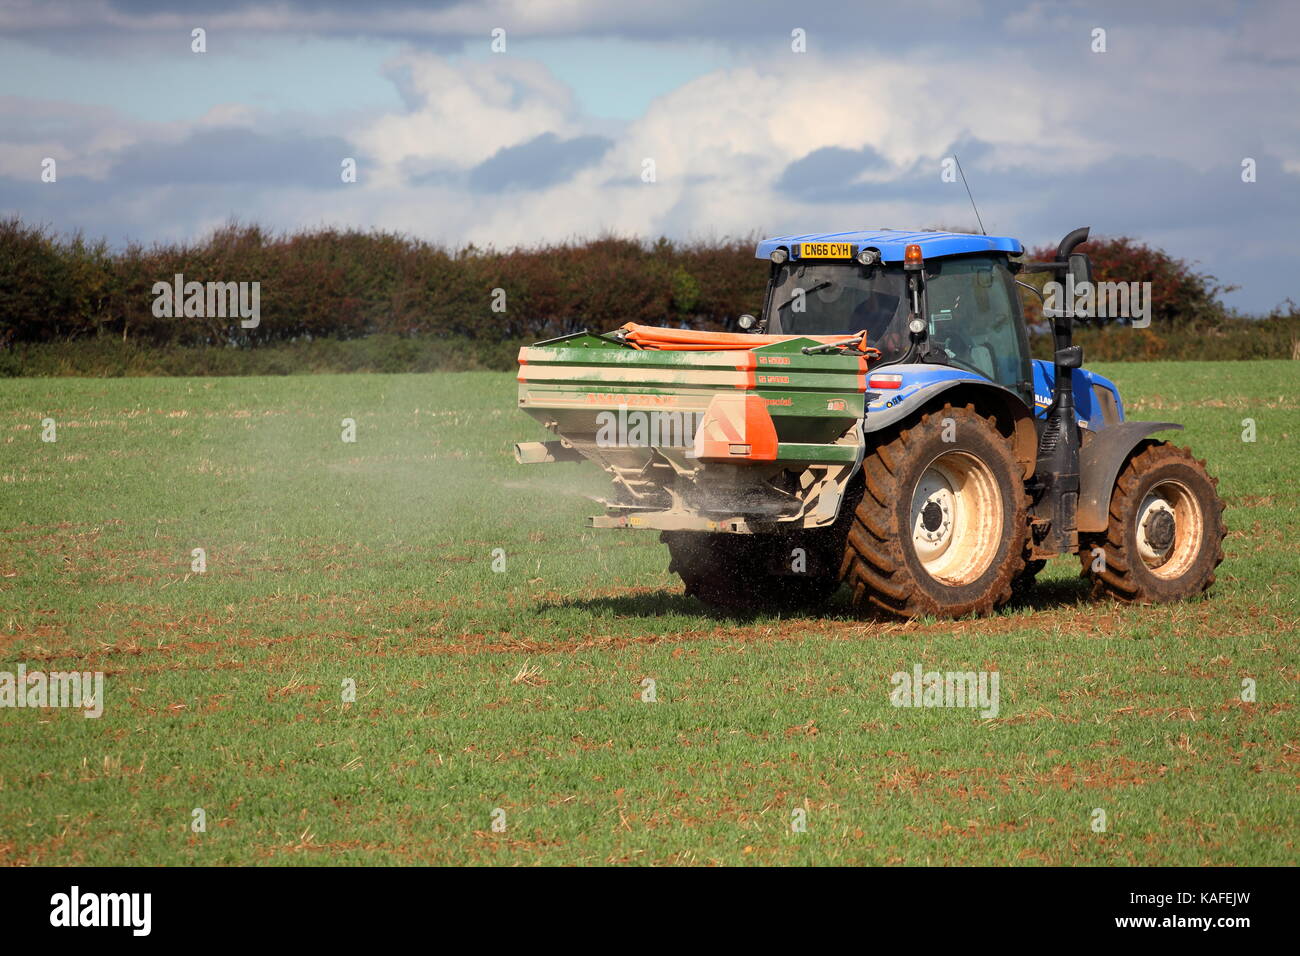 Un agriculteur de l'engrais l'épandage sur un champ labouré récemment avec un tracteur attelé la machine à l'aide des disques en rotation afin de distribuer les produits chimiques Banque D'Images